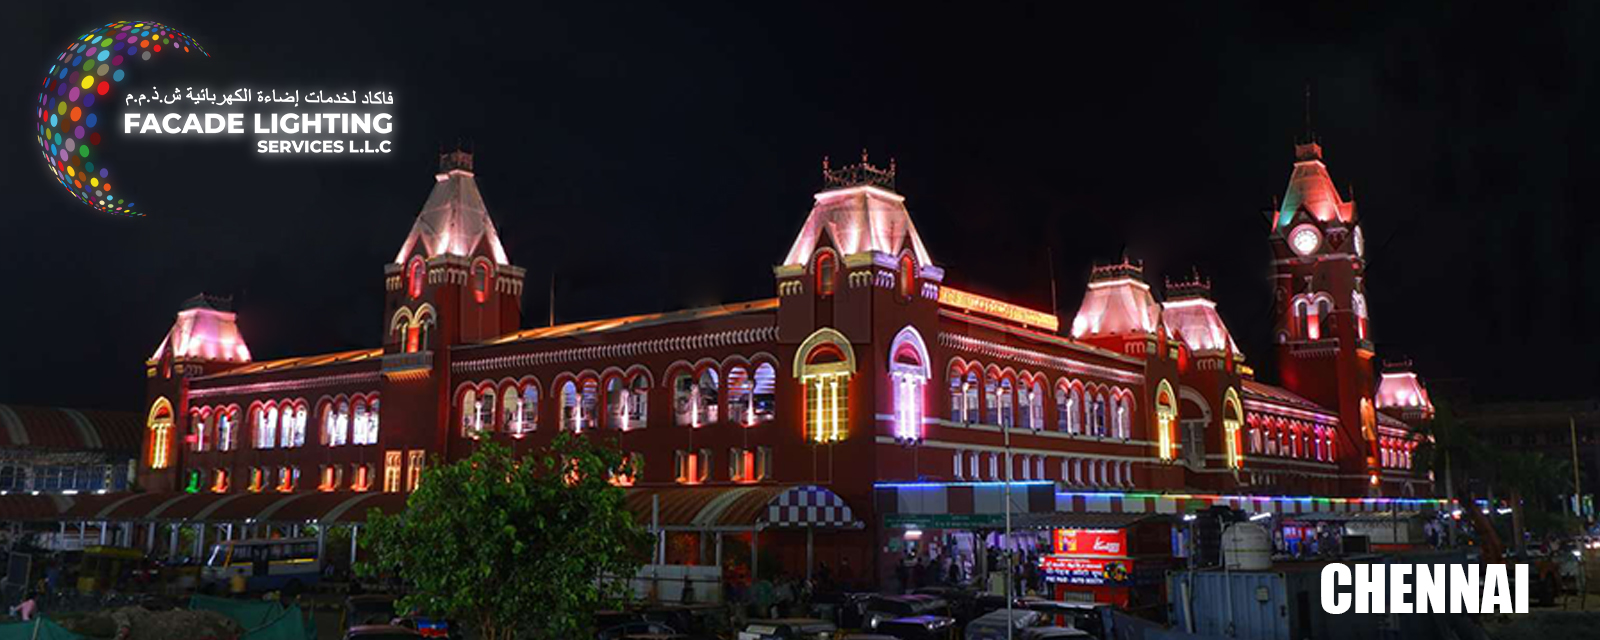 Chennai facade lighting